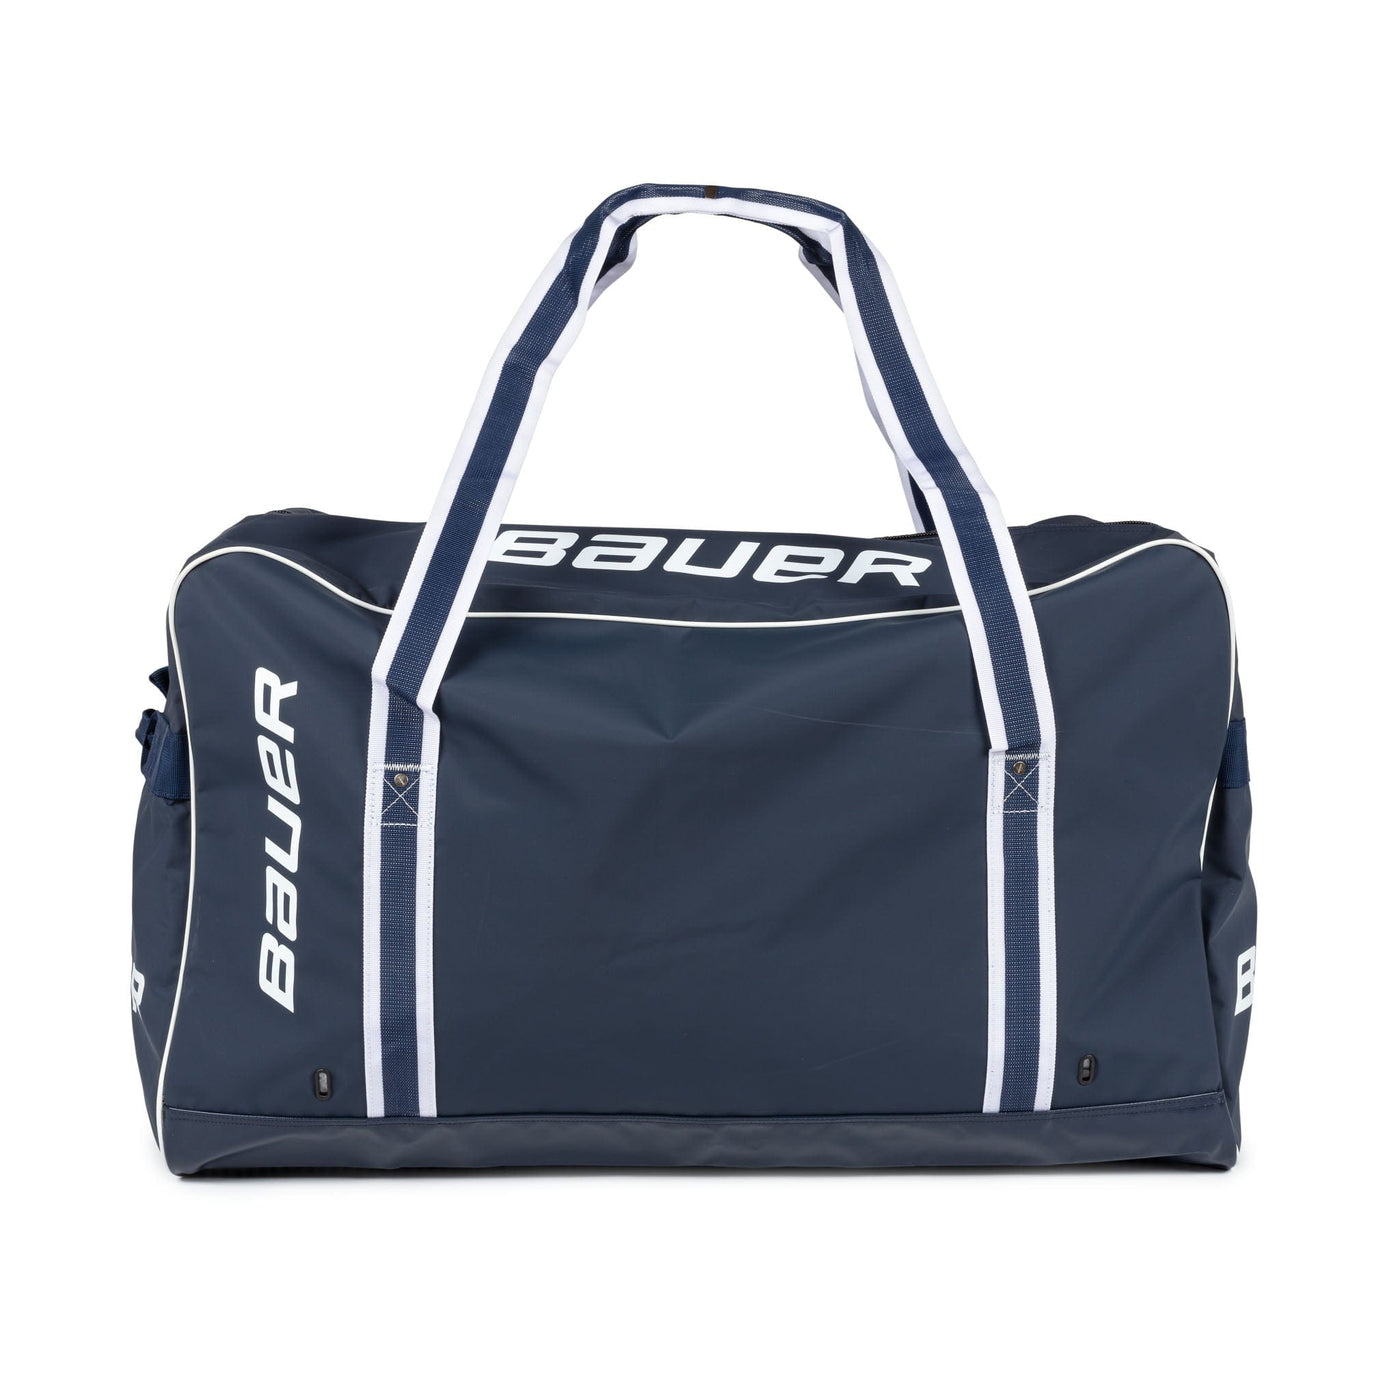 Bauer Pro Senior Carry Hockey Bag